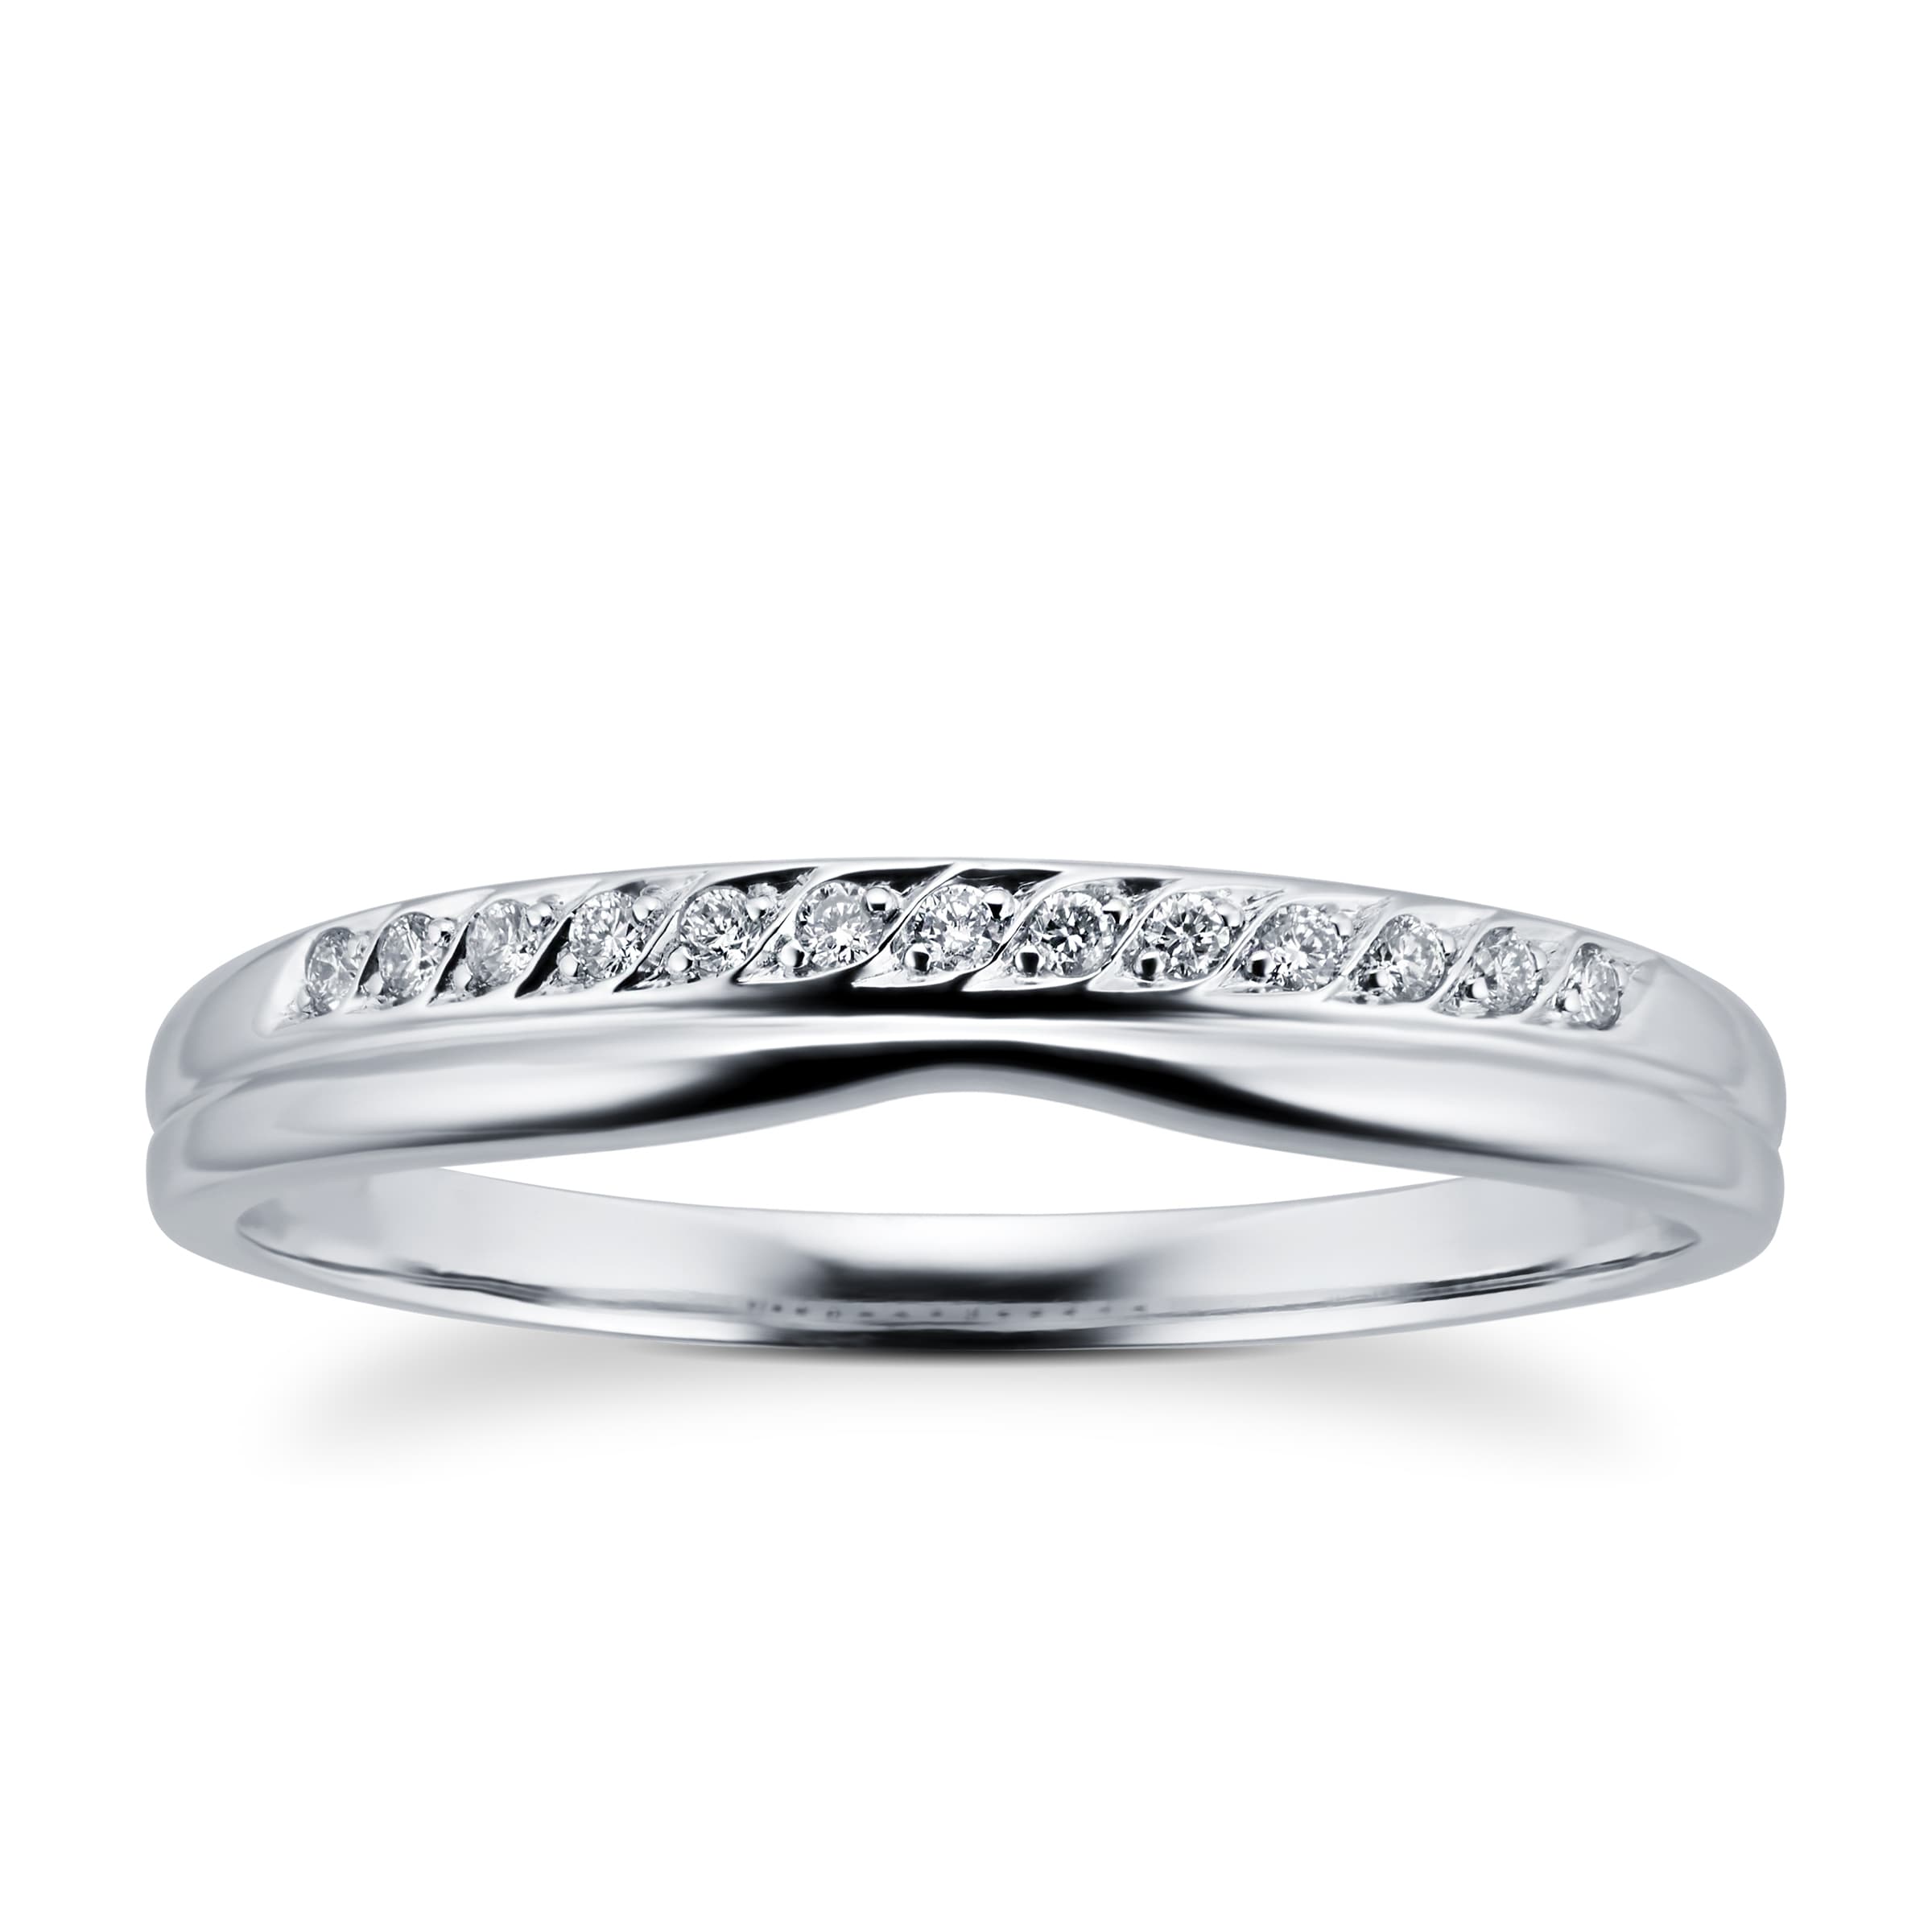 Ladies Diamond Set Shaped Wedding Ring In 18 Carat White Gold - Ring Size J